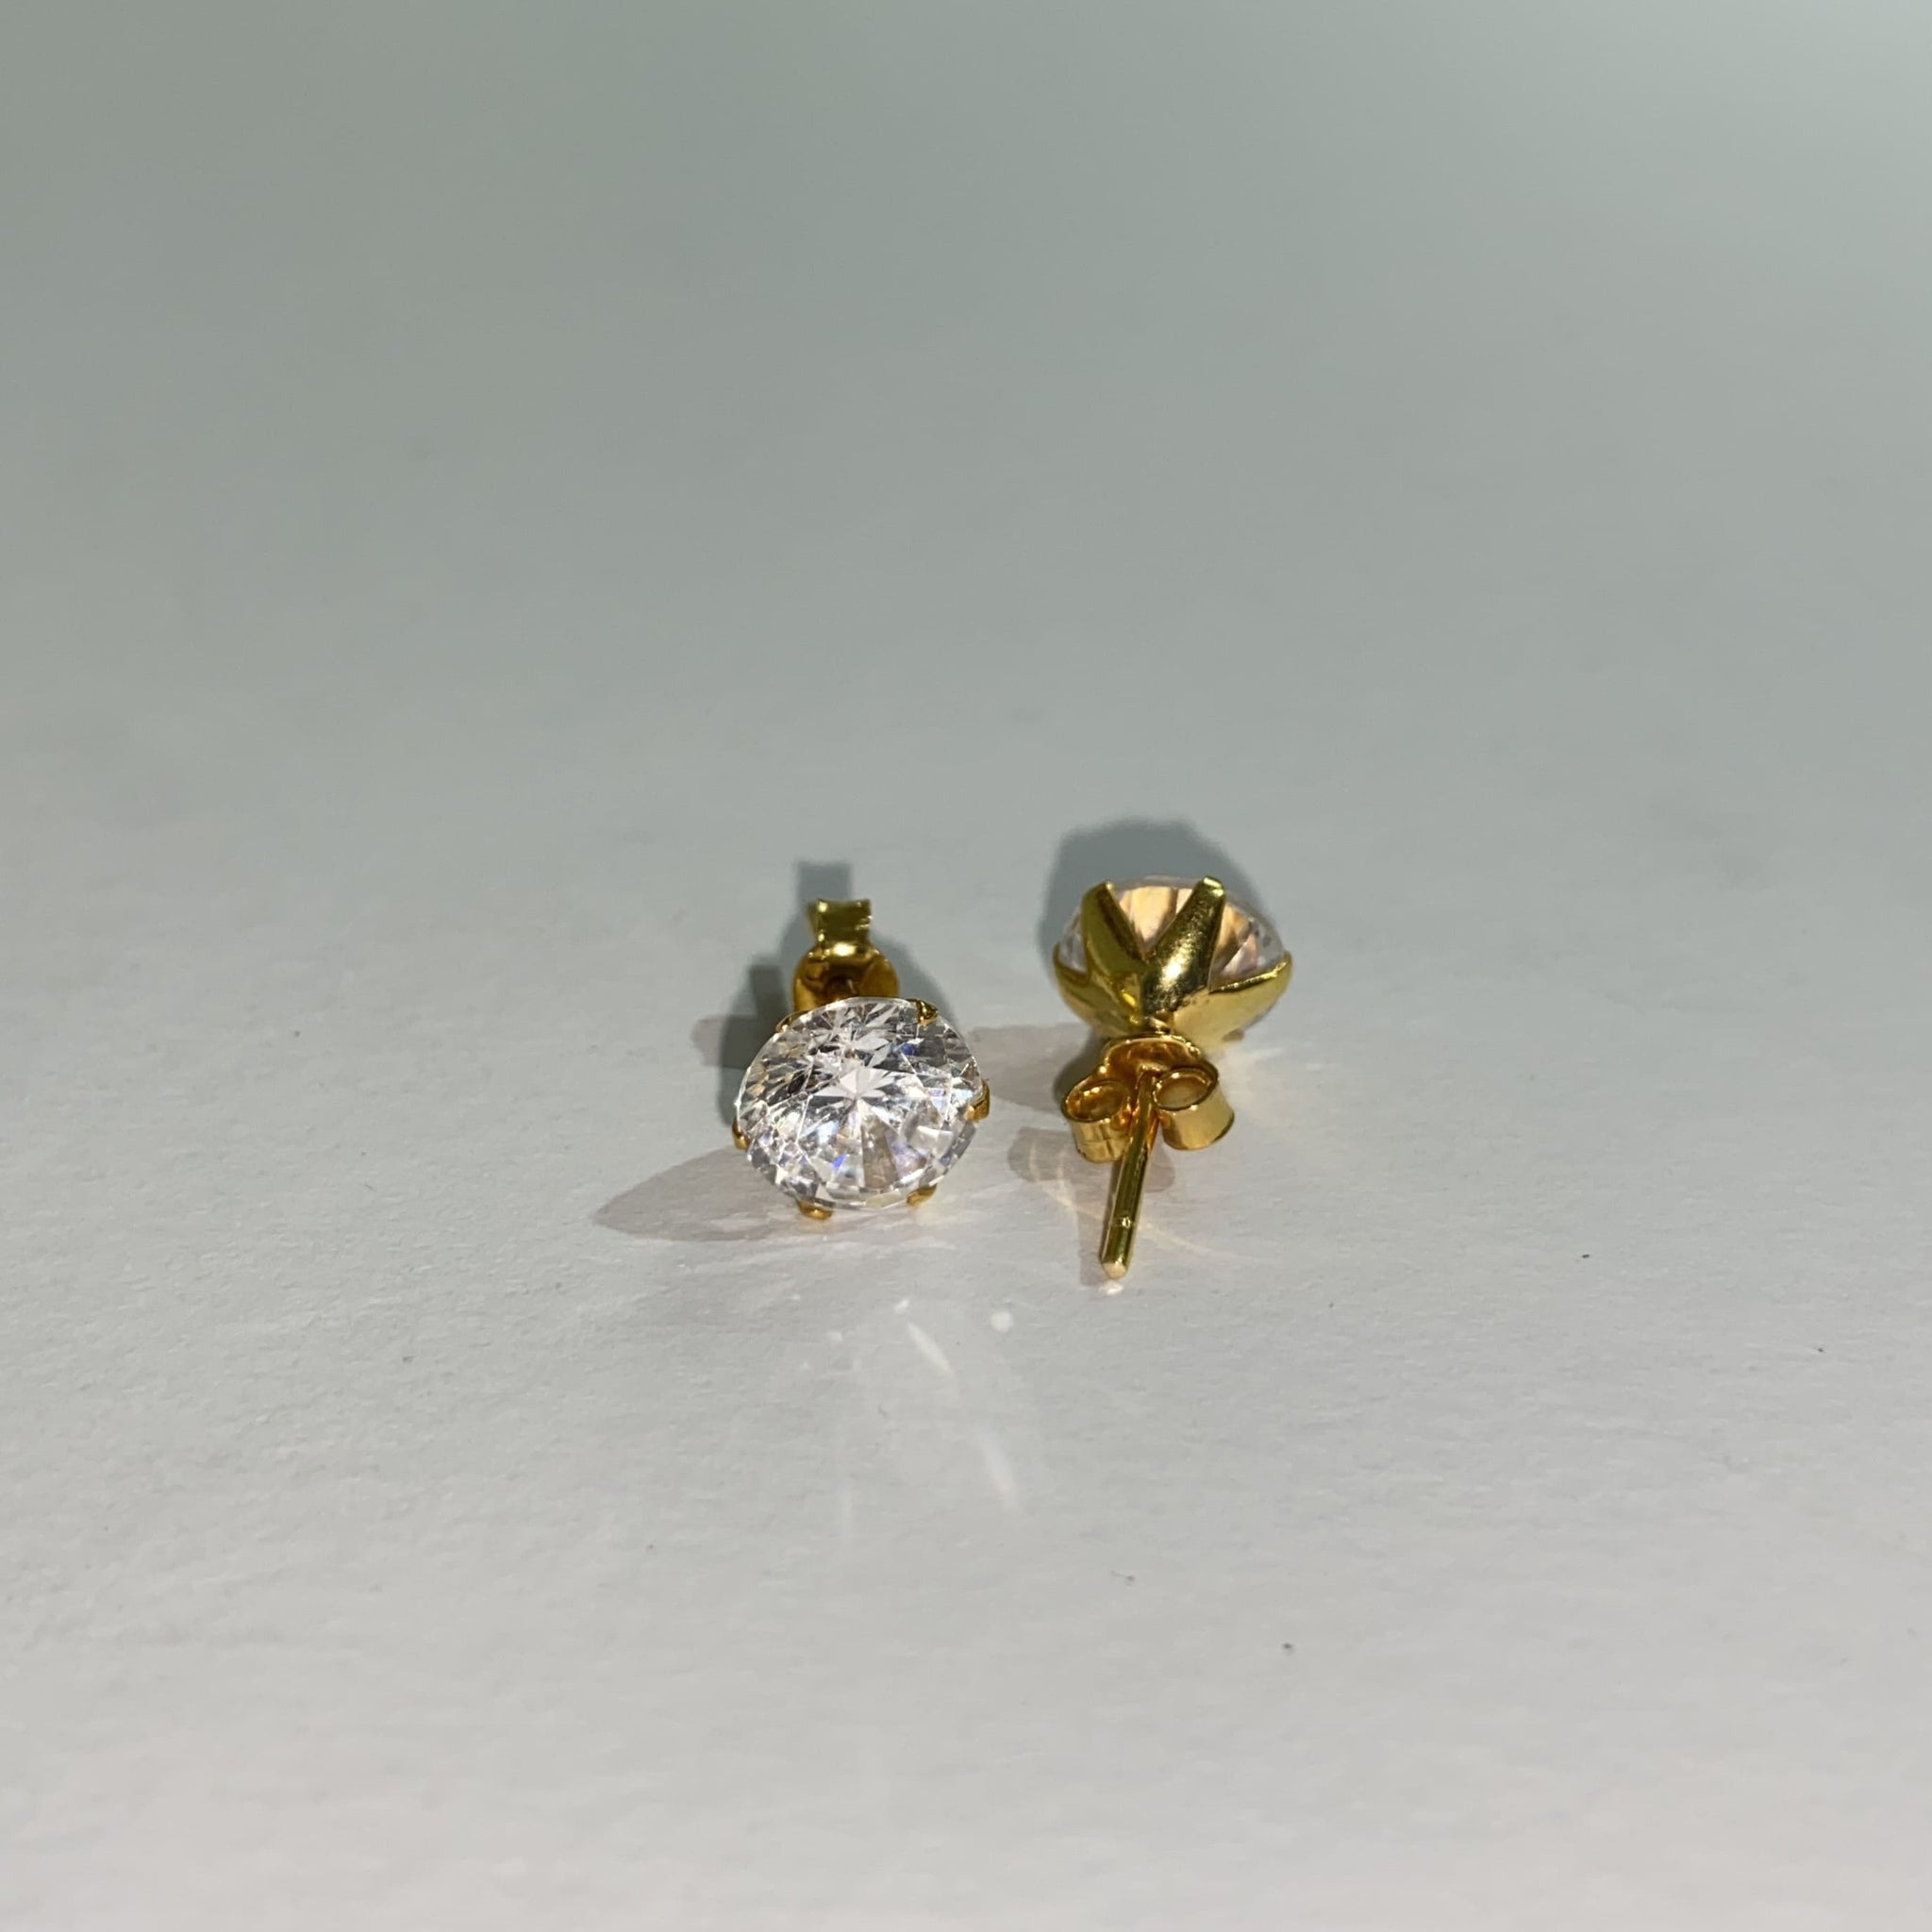 Zirkonia earrings / oorbellen 185 - 14 karaat